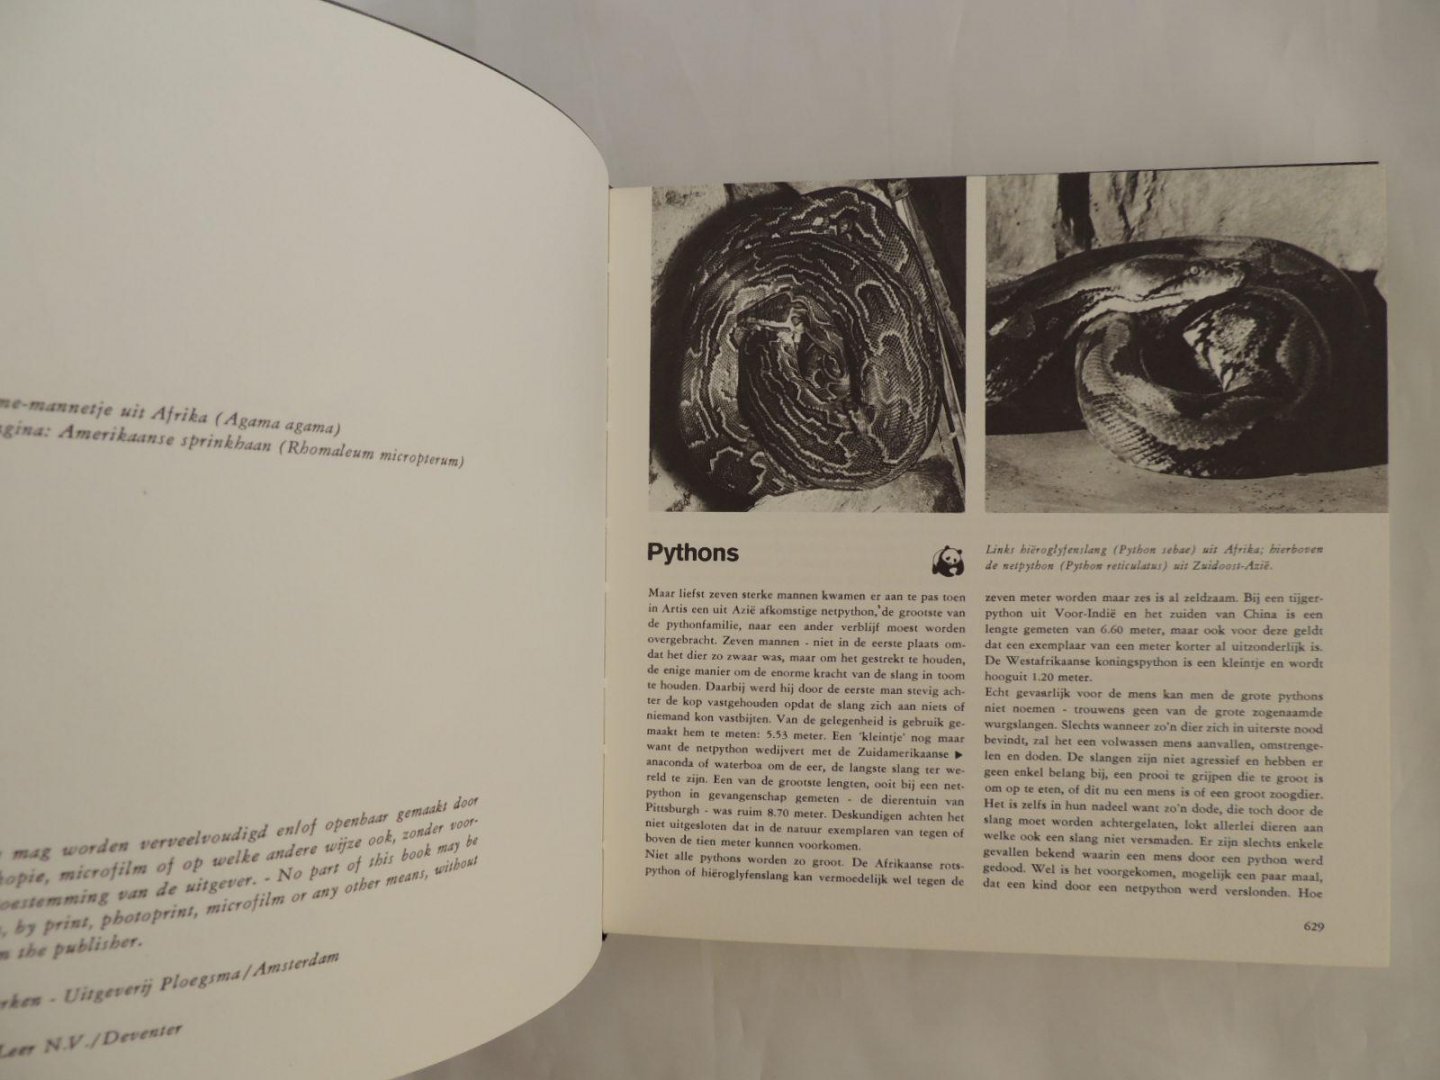 Werken, H. van de - tekst / Bokma, J. - foto's - Artis Dieren-Encyclopedie deel 5 - PYTHON / TIJGER